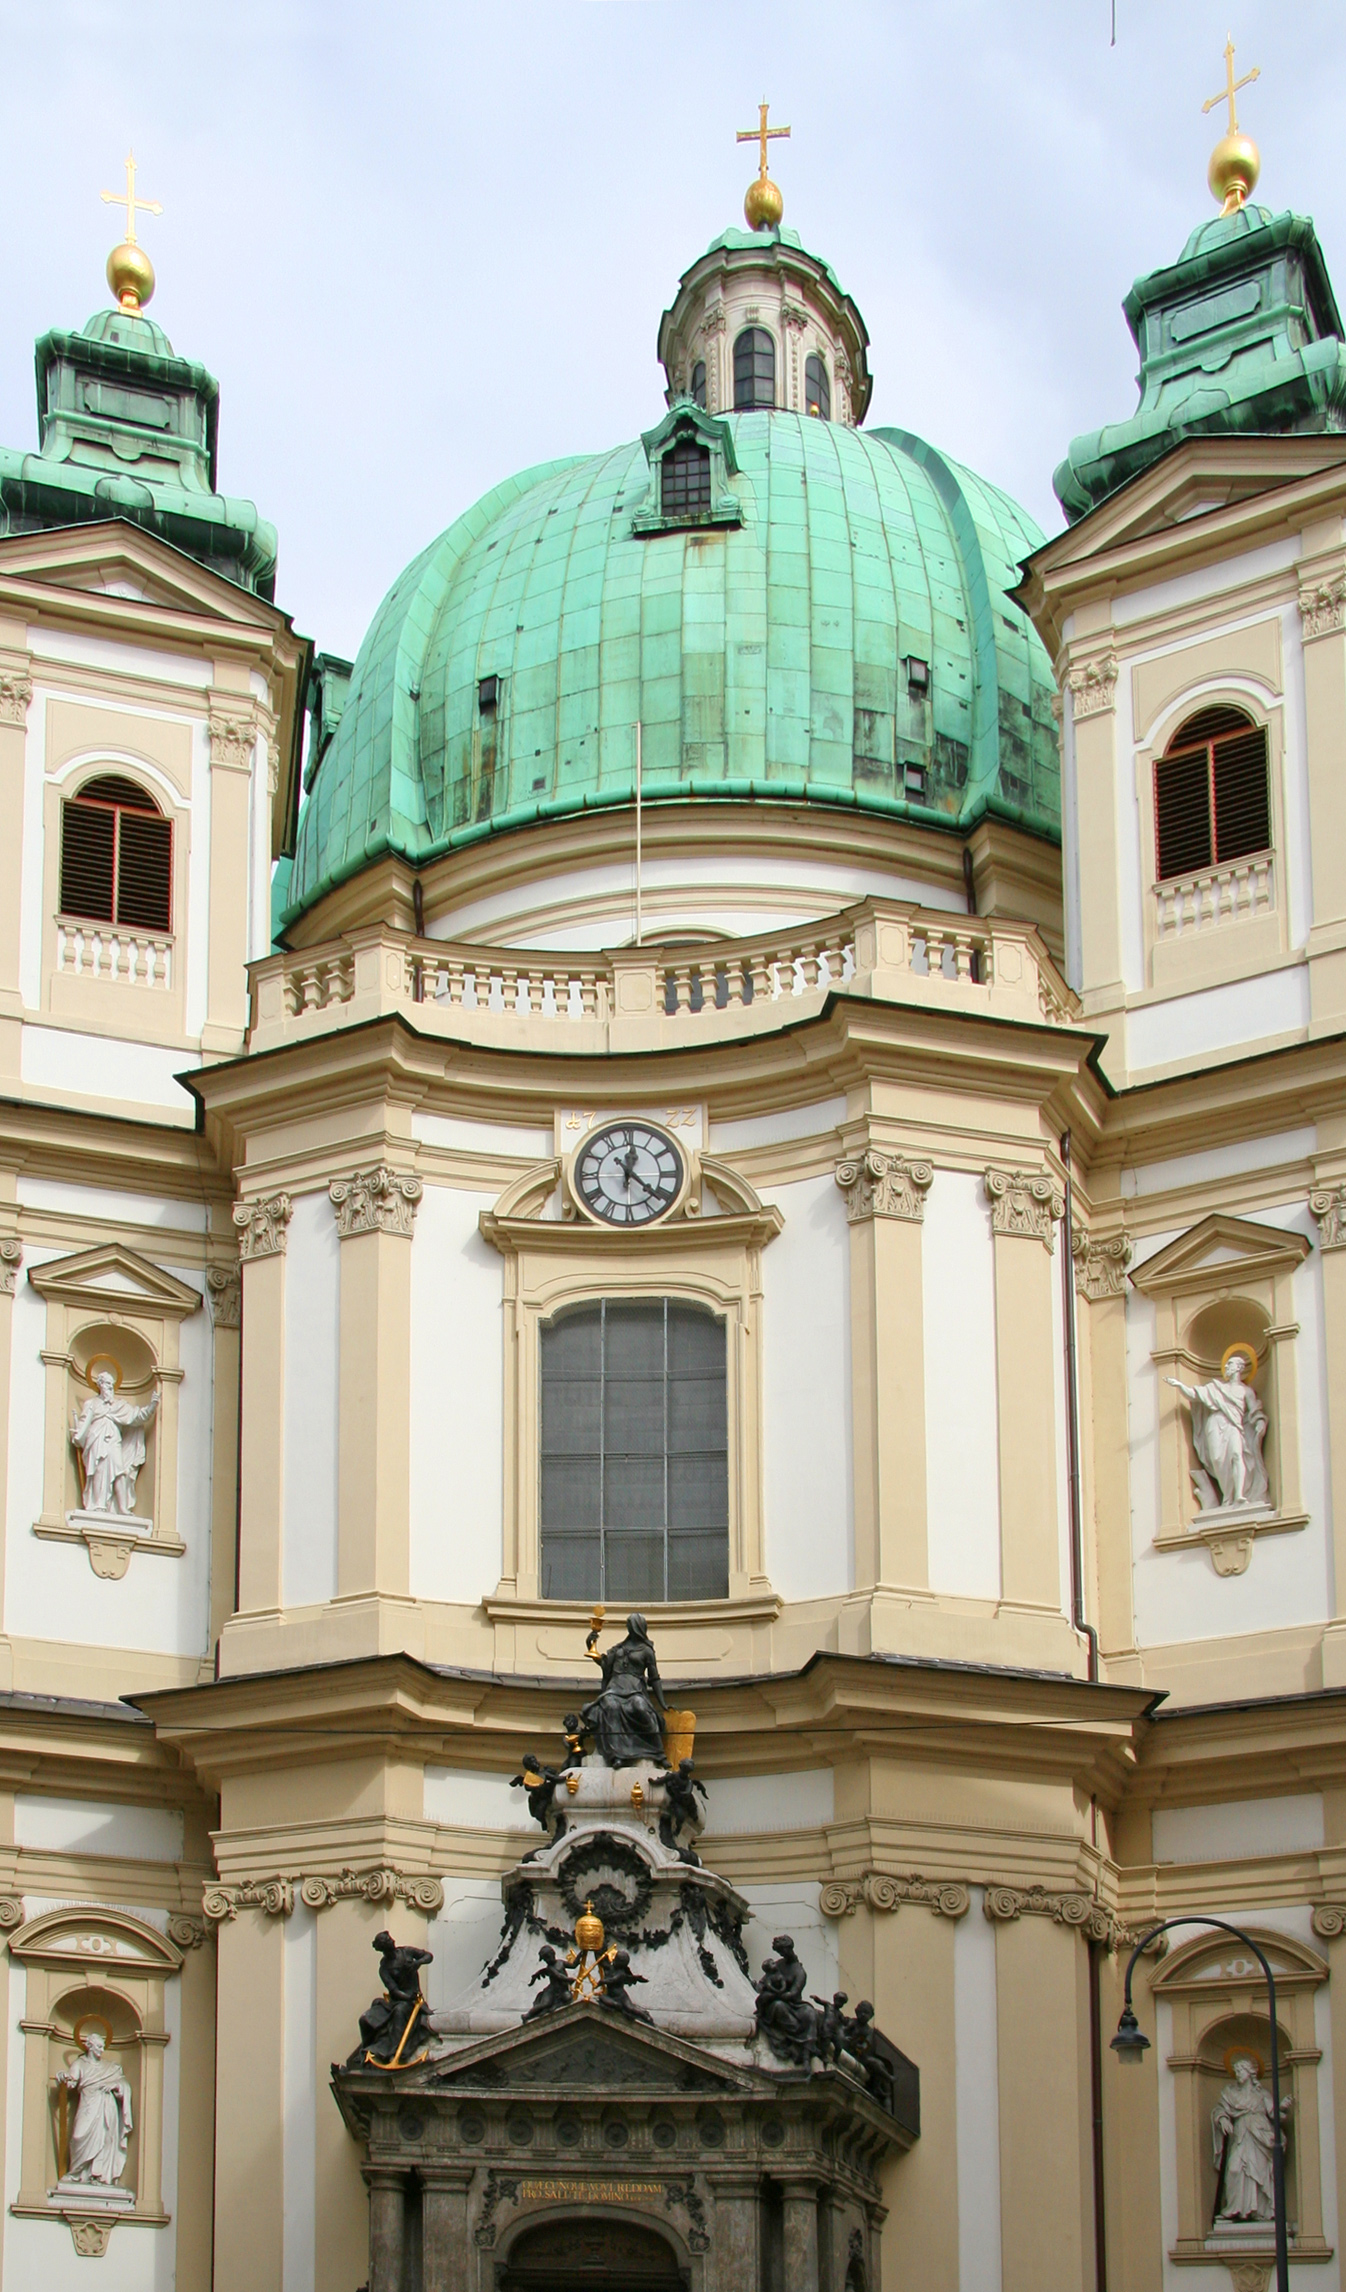 Saint Peter's church in Vienna